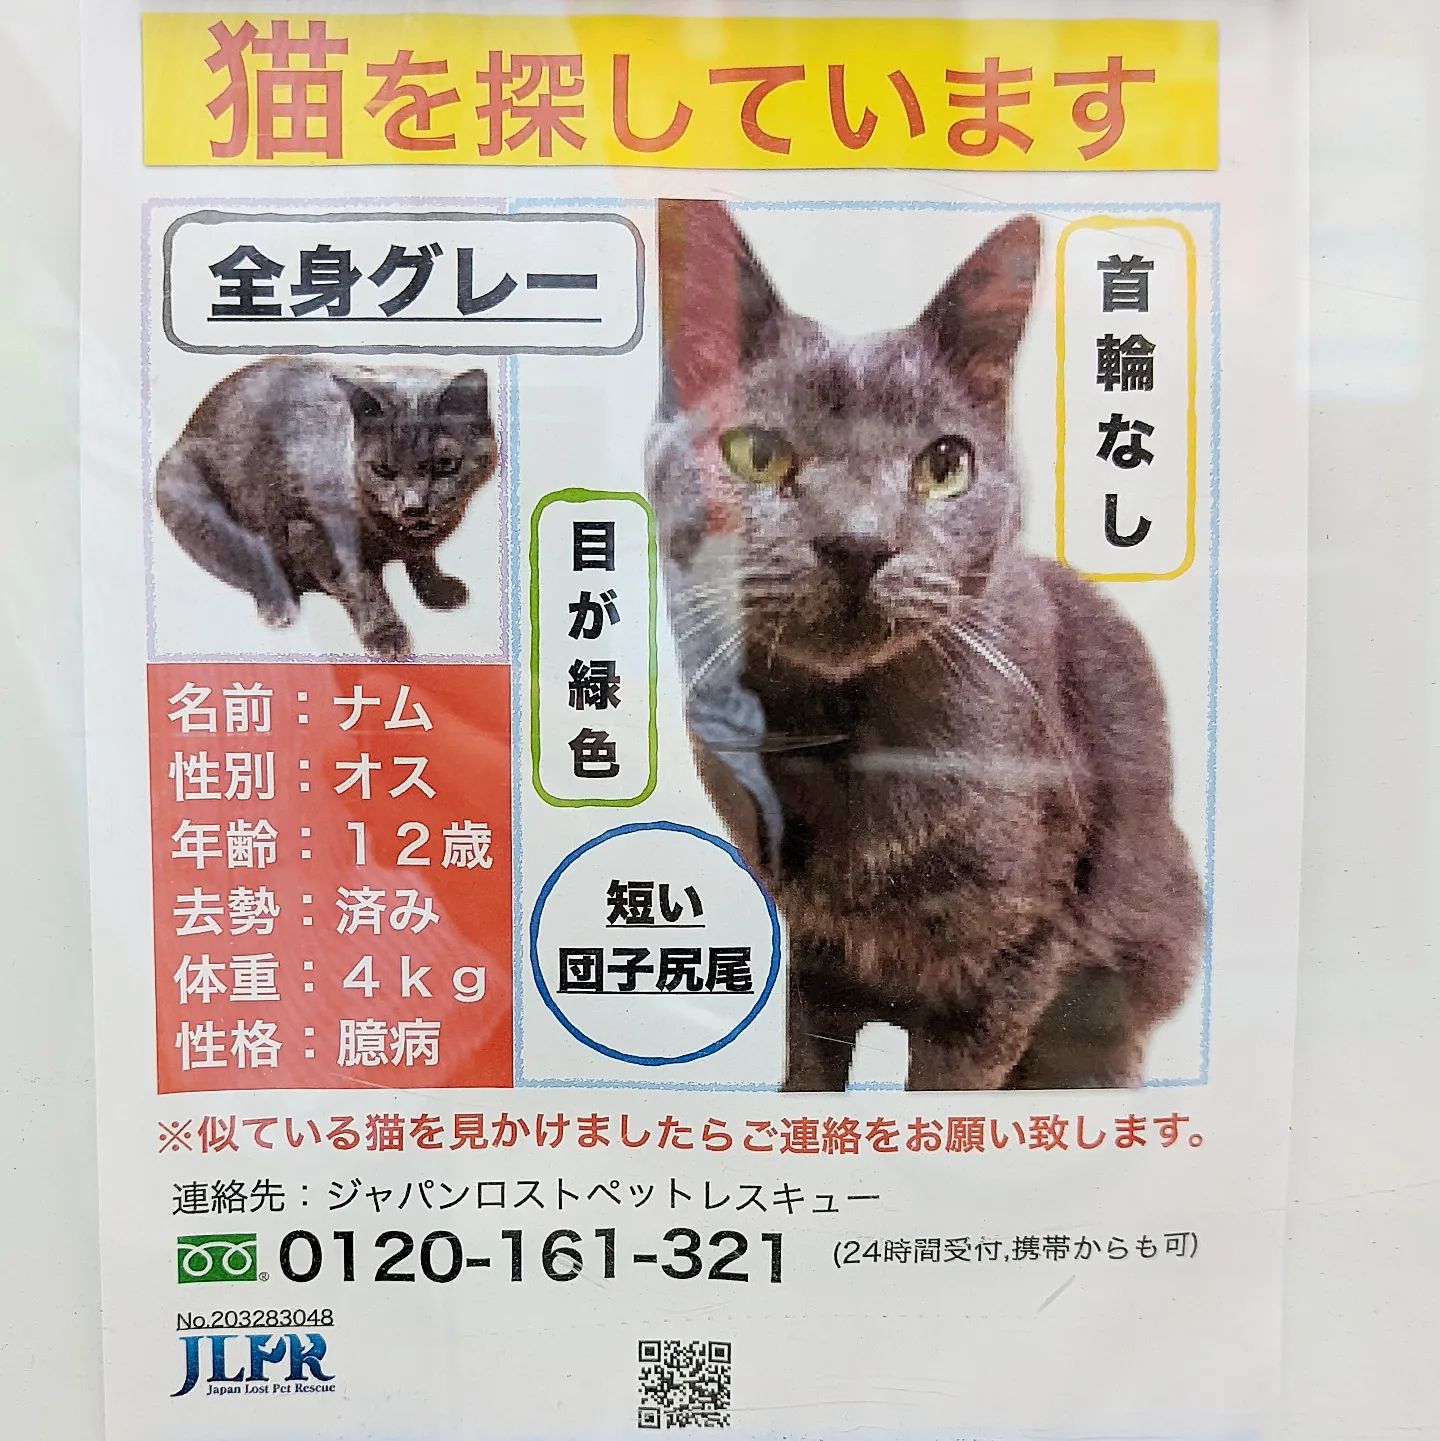 #武蔵小山情報 #迷い猫 全身グレーの猫（12歳オス）探してます。ナムさんが見つかりますように。#武蔵小山 #猫 #迷い猫探してます #迷い猫さがしてます #迷い猫捜索中 #迷い猫捜索 #猫を探しています #猫探してます